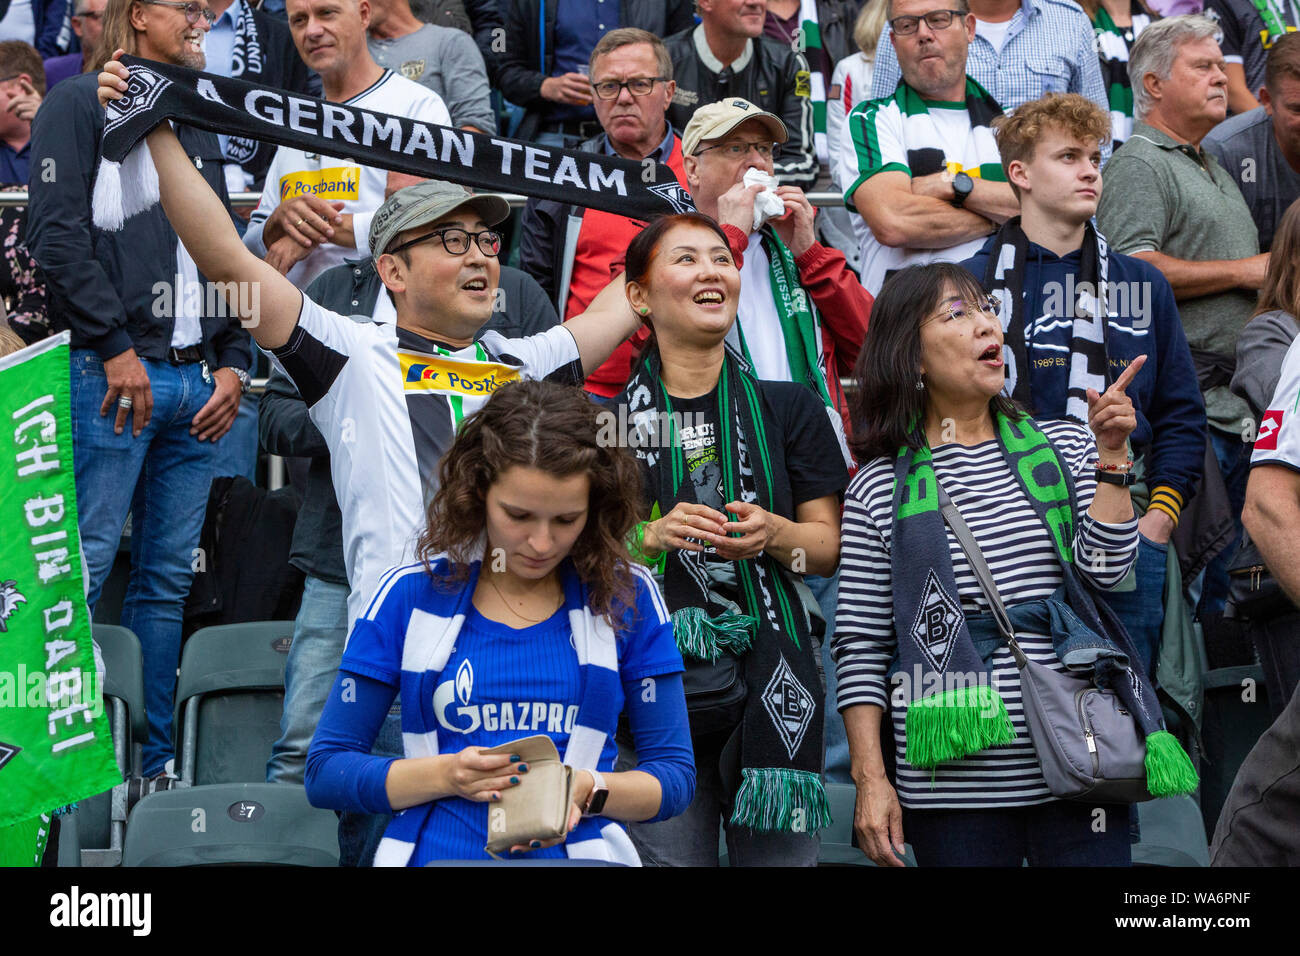 schal FC Schalke 04 Fußball verein Deutschland fan football Deutschland scarf 